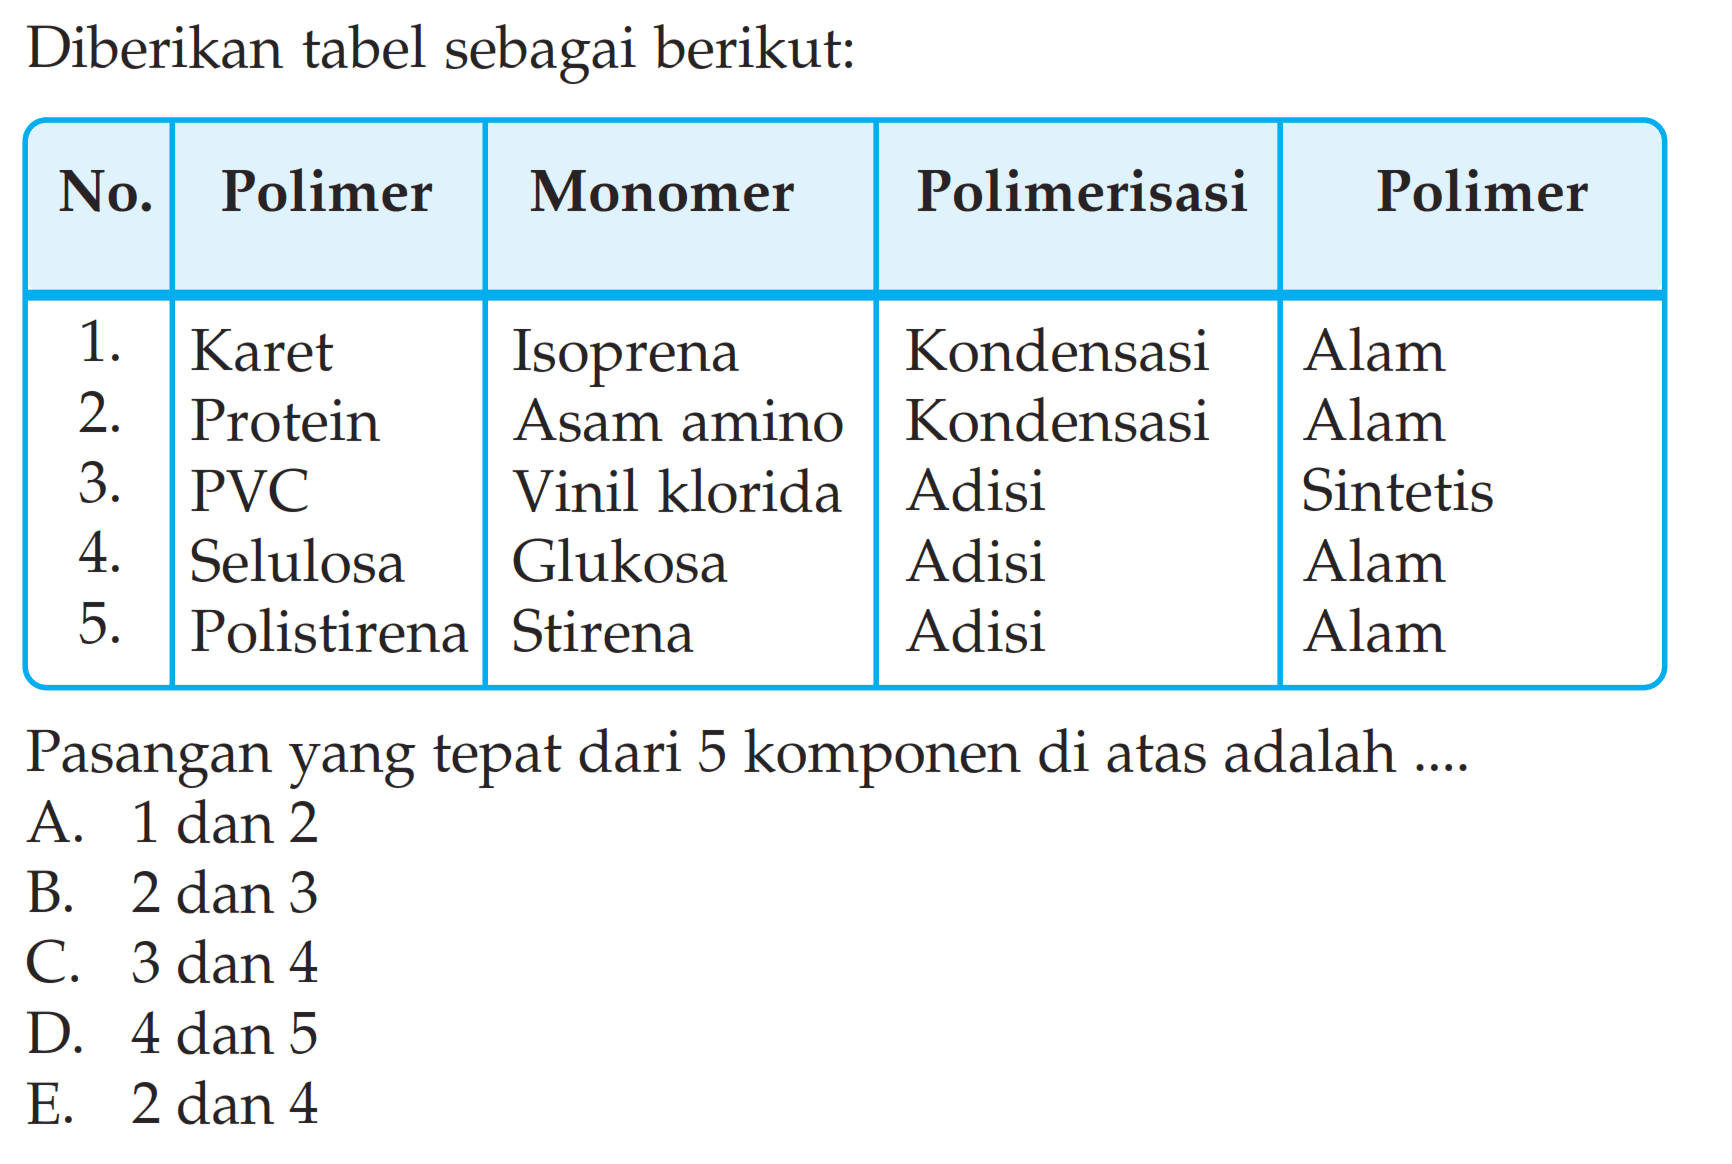 Diberikan tabel sebagai berikut: No.  Polimer  Monomer  Polimerisasi  1 Polimer   1.  Karet  Isoprena  Kondensasi  Alam 2.  Protein  Asam amino  Kondensasi  Alam 3.  PVC  Vinil klorida  Adisi  Sintetis 4.  Selulosa  Glukosa  Adisi  Alam 5.  Polistirena  Stirena  Adisi  Alam Pasangan yang tepat dari 5 komponen di atas adalah ....